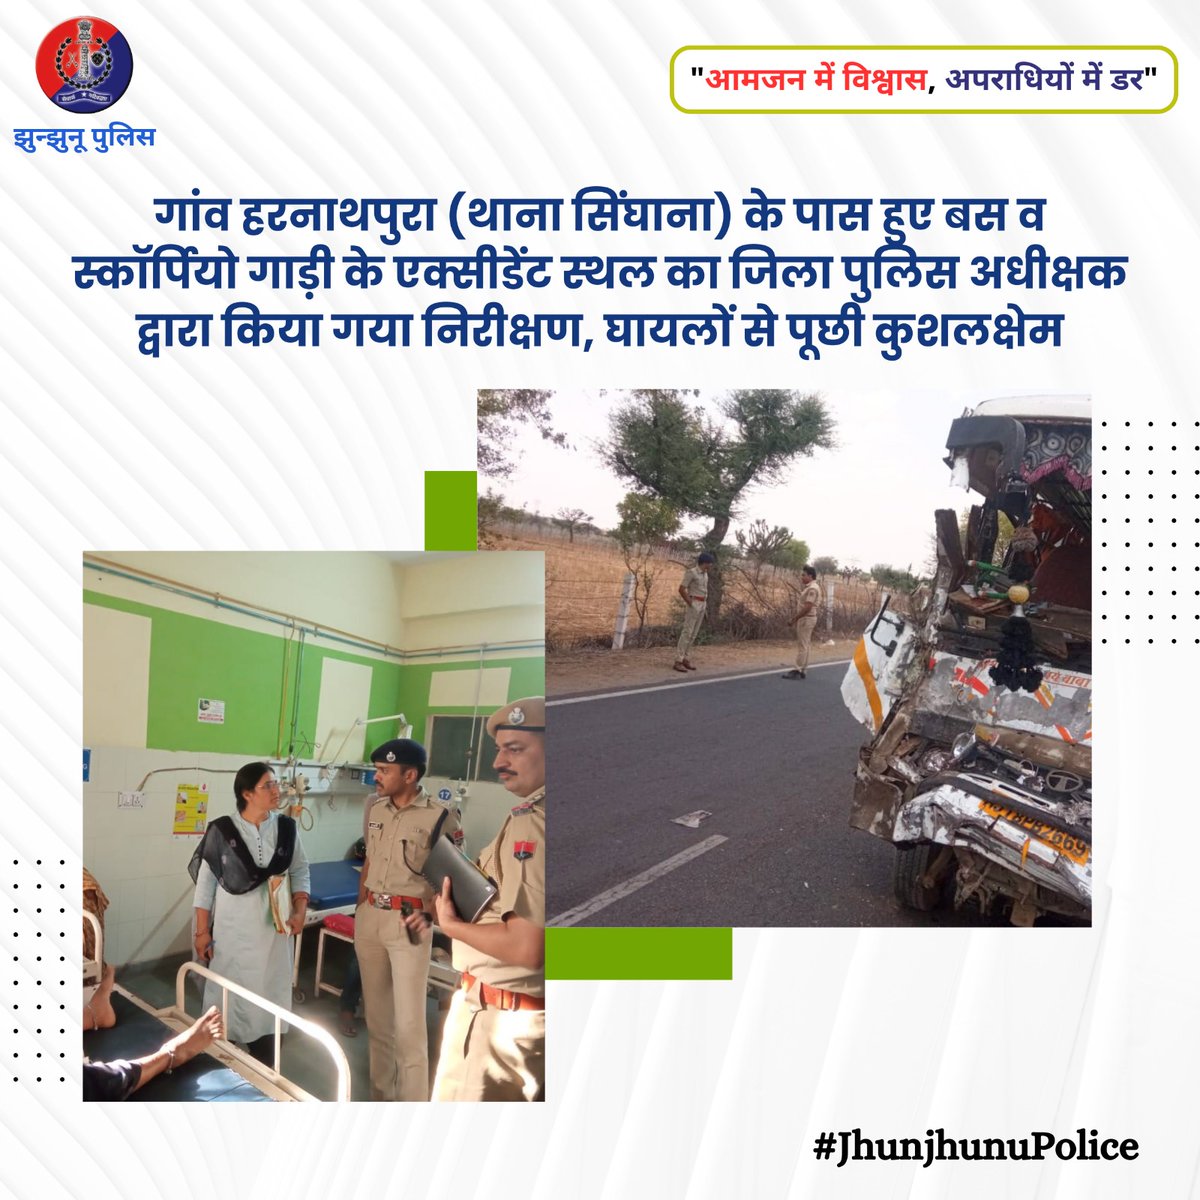 गांव हरनाथपुरा (थाना सिंघाना) के पास हुए बस व स्कॉर्पियो गाड़ी के एक्सीडेंट स्थल का जिला पुलिस अधीक्षक द्वारा किया गया निरीक्षण #JhunjhunuPolice